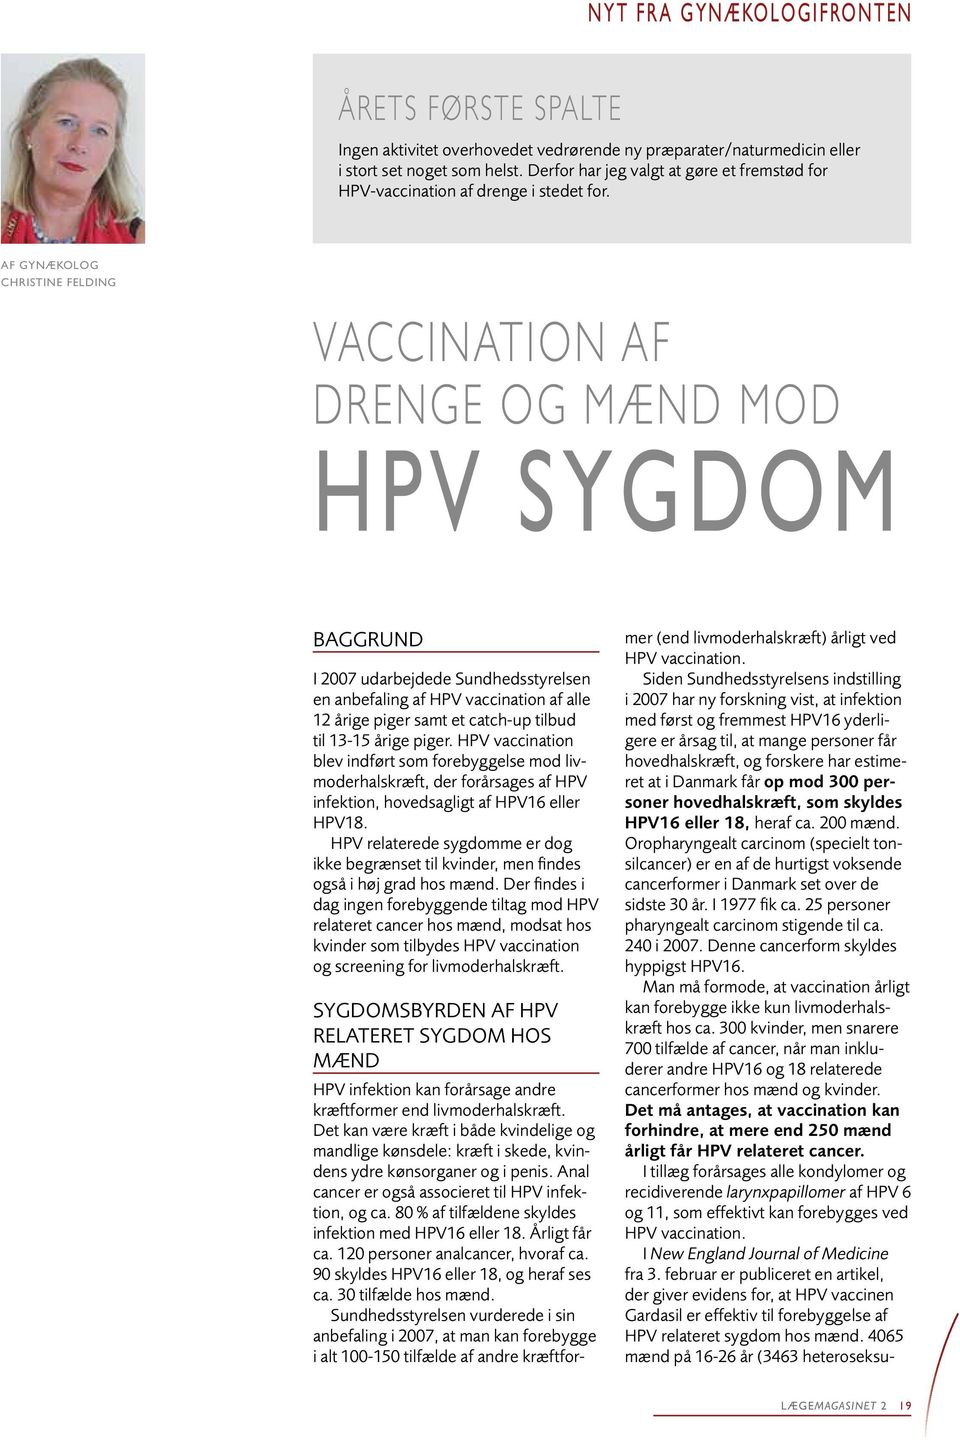 Af gynækolog Christine Felding Vaccination af drenge og mænd mod HPV sygdom Baggrund I 2007 udarbejdede Sundhedsstyrelsen en anbefaling af HPV vaccination af alle 12 årige piger samt et catch-up